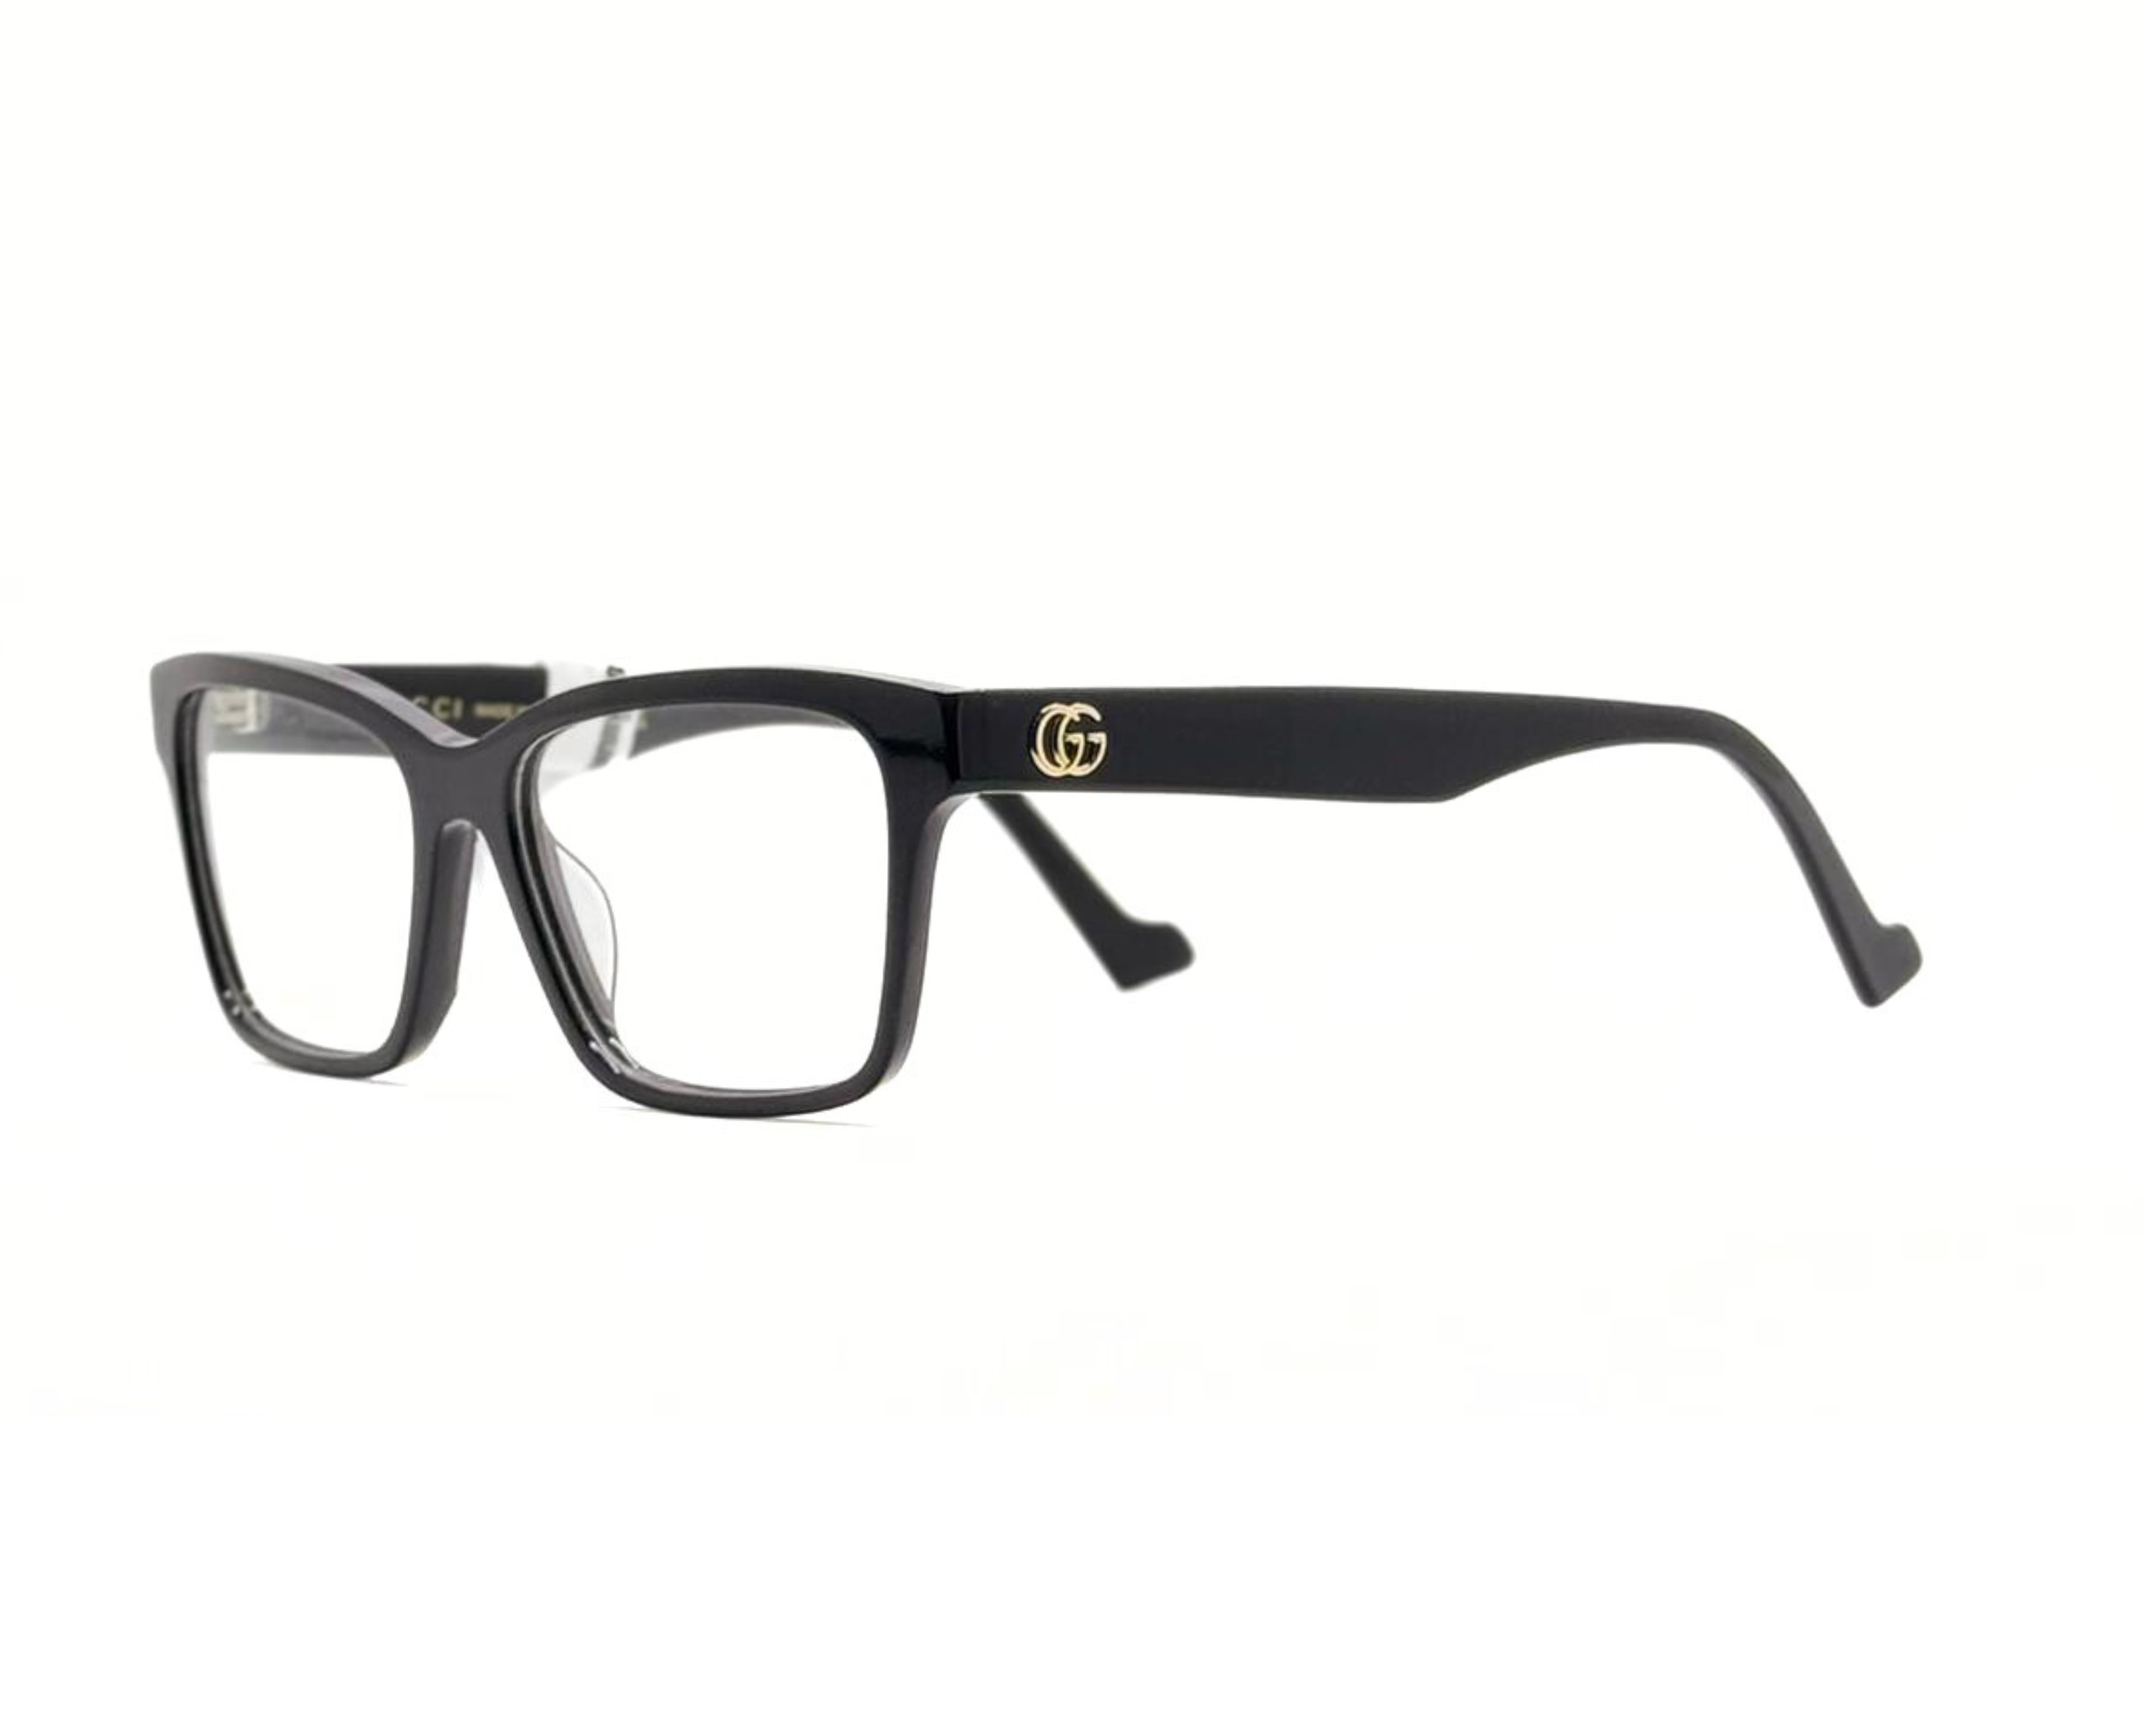 NS Luxury - J04 - Black - Eyeglasses 